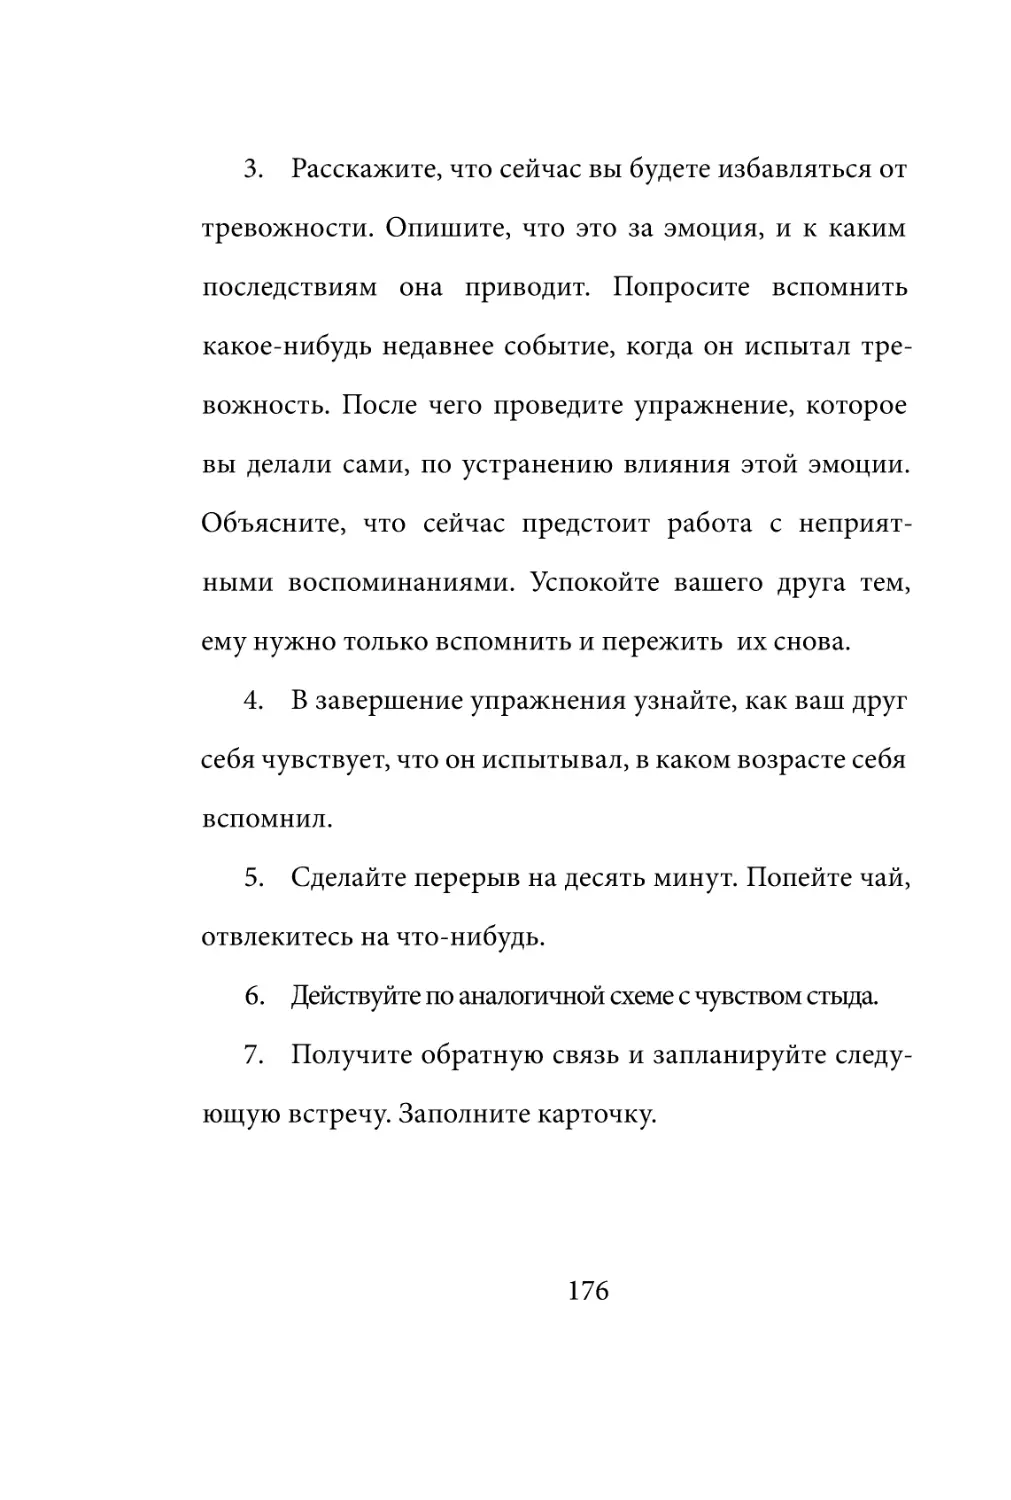 Sergey_Filippov_Dnevnik_samorazvitia_Evolyutsia_Vnutrennego_Sostoyania_176.pdf (p.176)